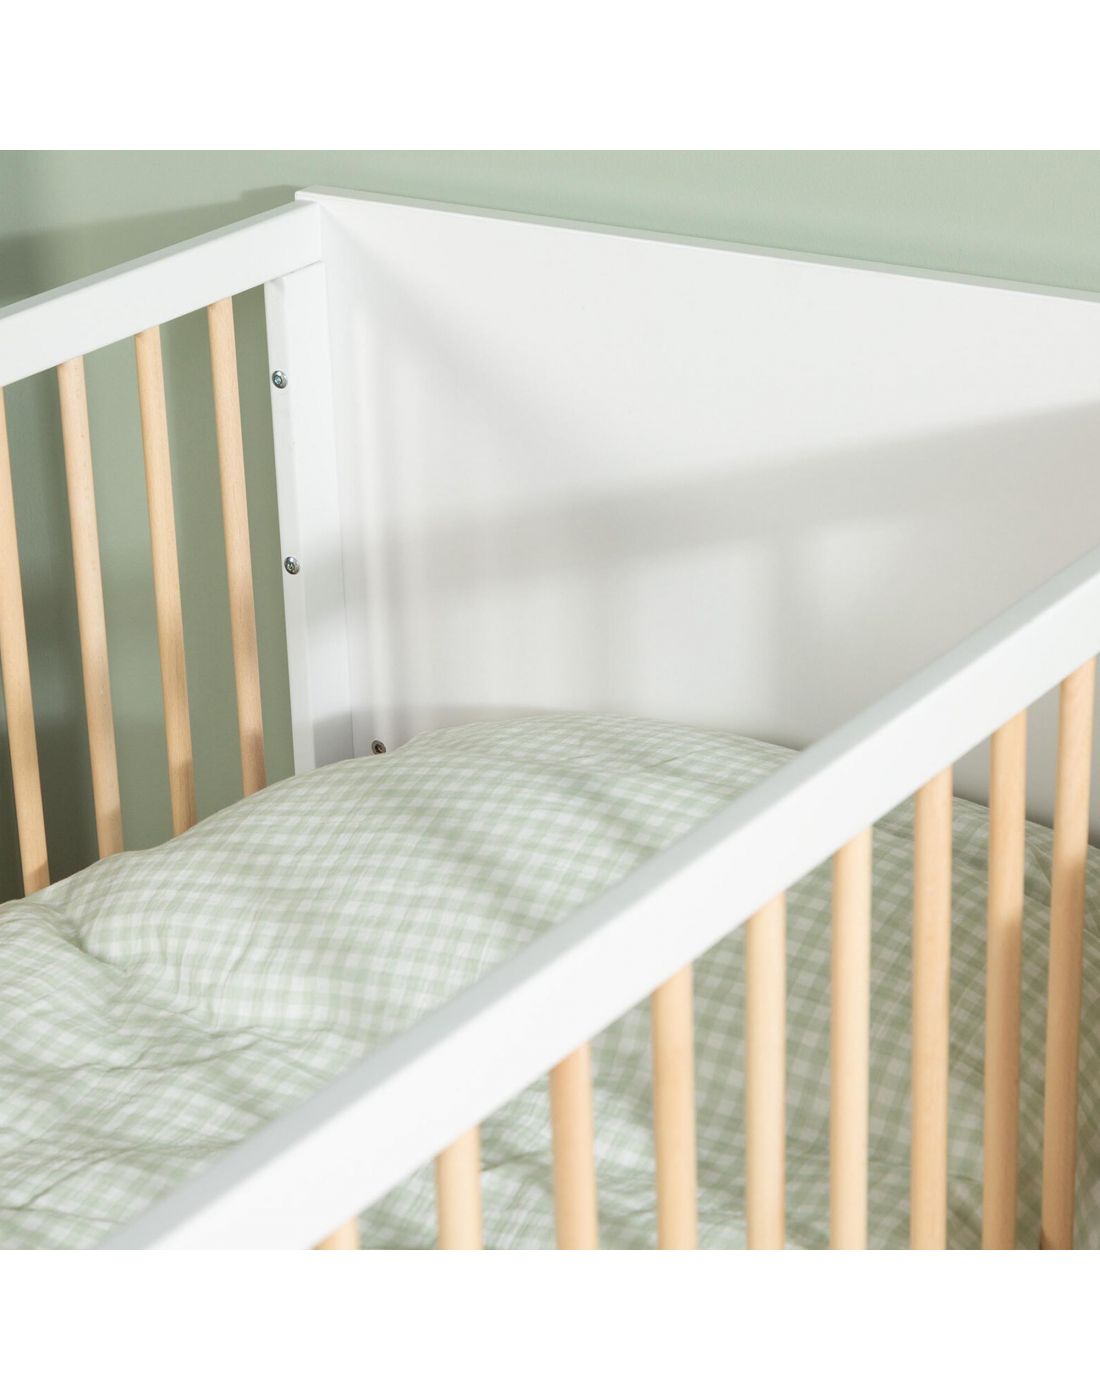 Παιδικό Κρεβάτι Wonder White 70x140cm Childhome, Childhome, BR77570 |  LapinKids.com | LAPIN KIDS